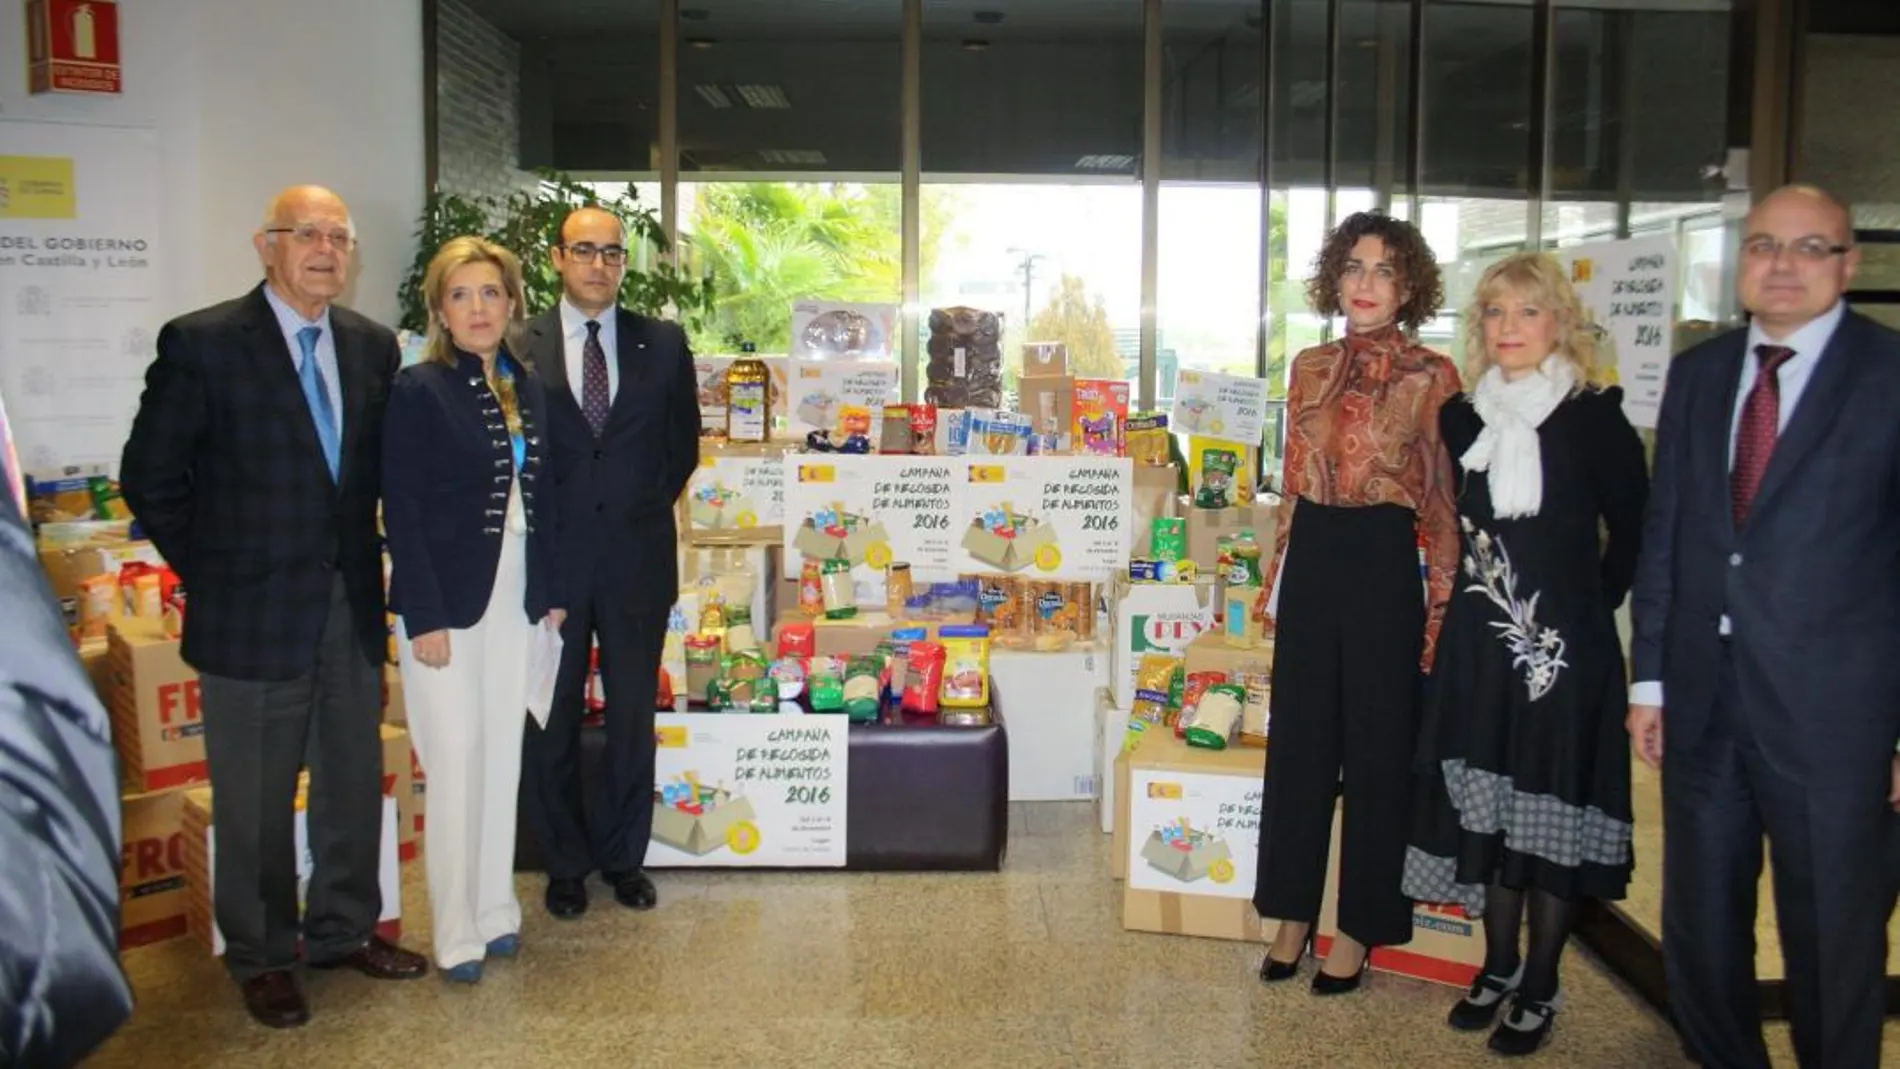 En 2016 se recogieron 5,1 toneladas de alimentos. En la imagen, la delegada María José Salgueiro, el subdelegado Luis Antonio Gómez y Jesús Mediavilla, del Banco de Alimentos, entre otros, durante la entrega de los productos hace un año